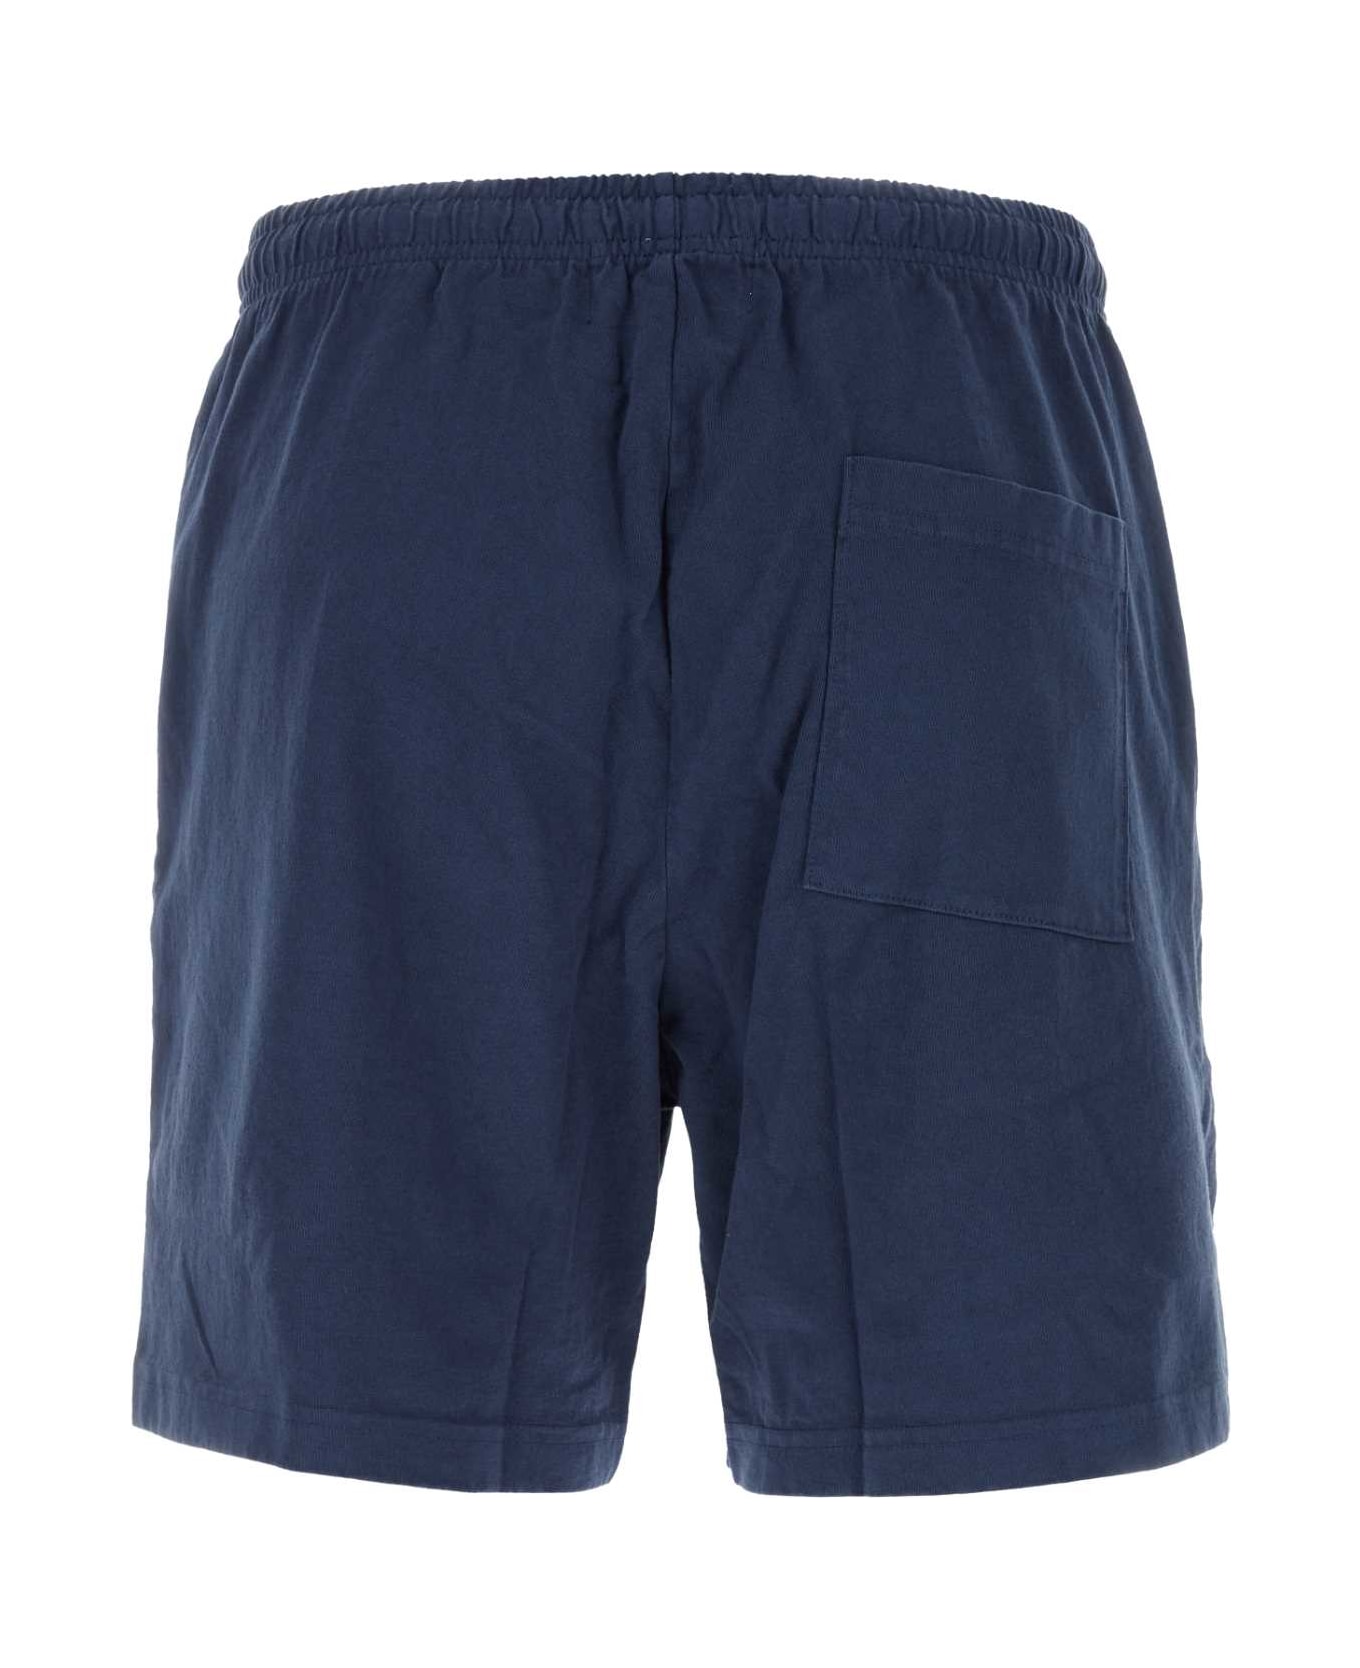 The Harmony Navy Blue Cotton Bermuda Shorts - 010